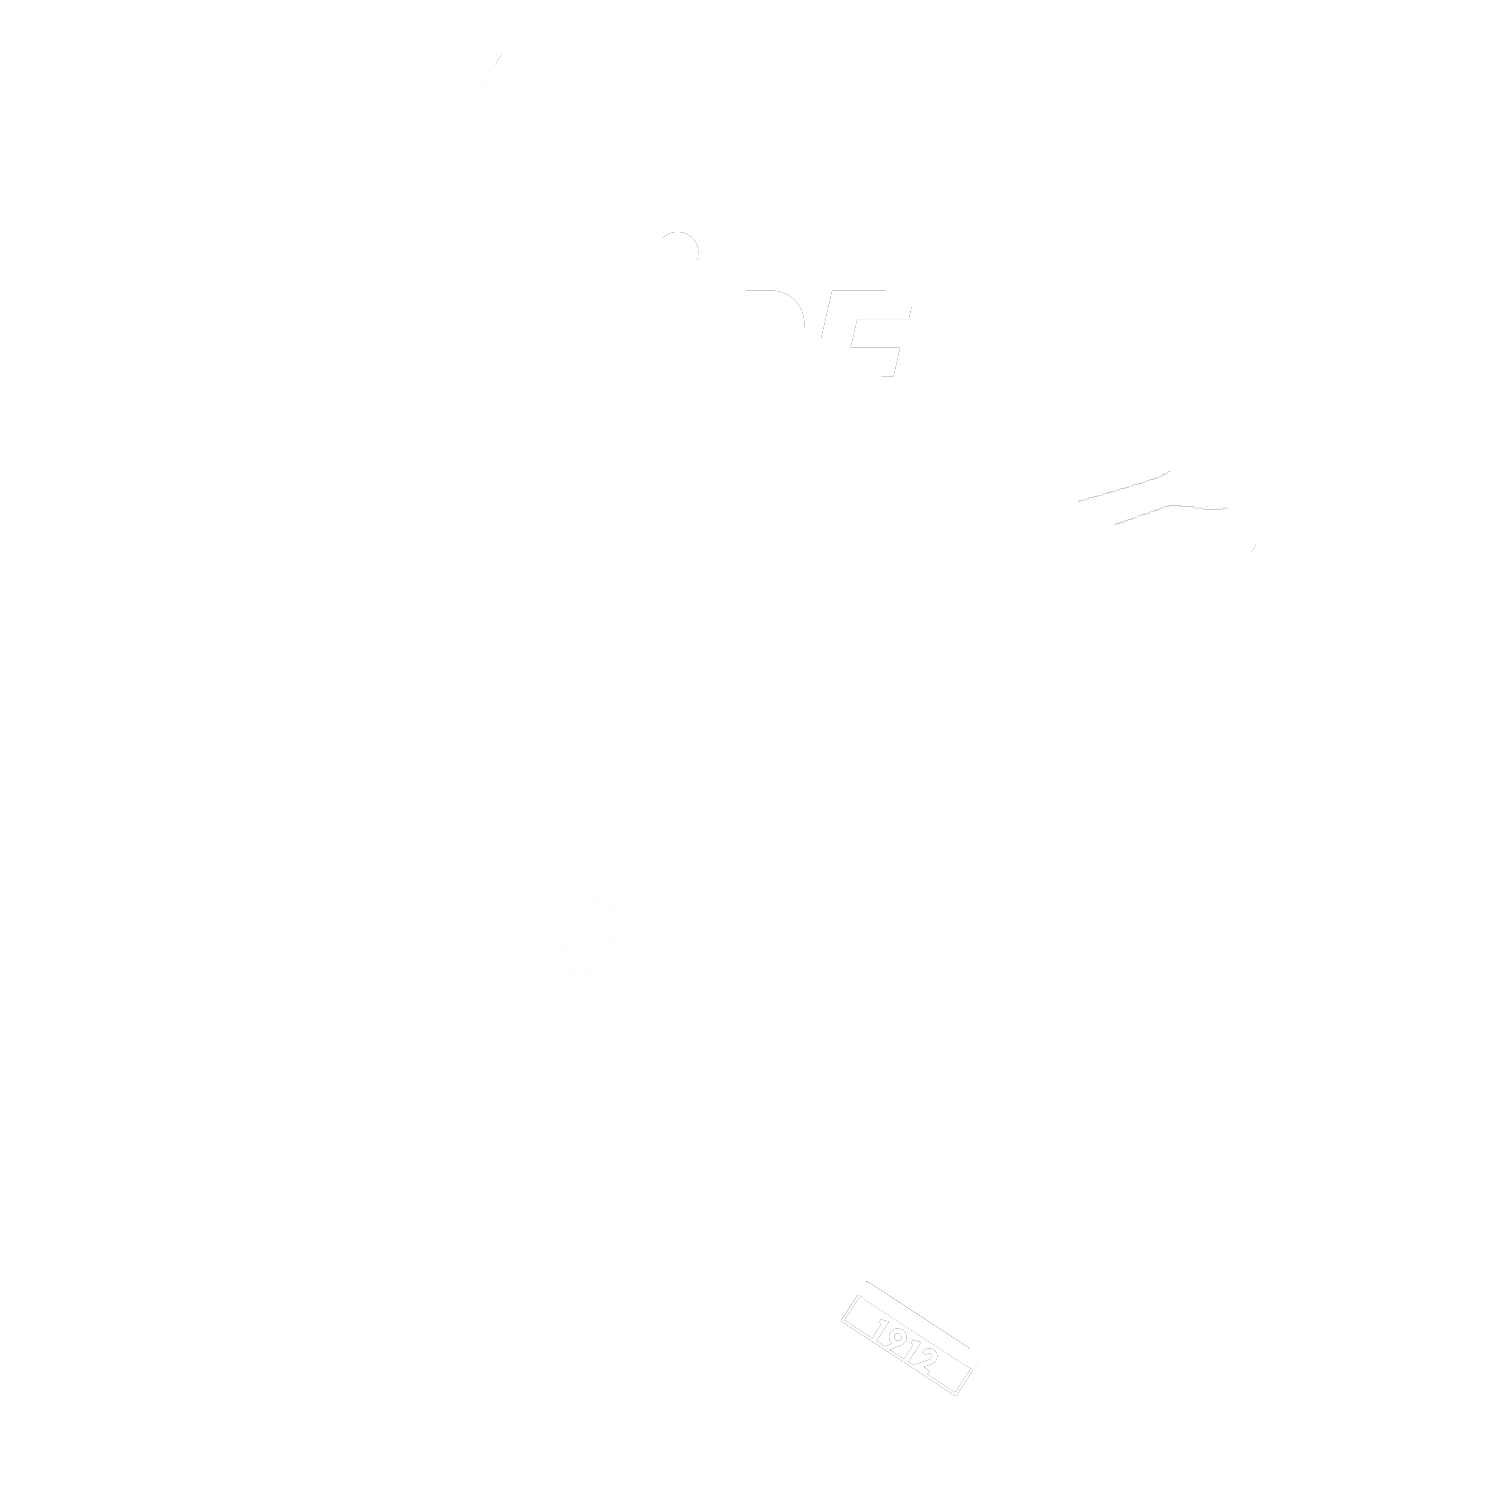 Secteur Roannais Sport Boules